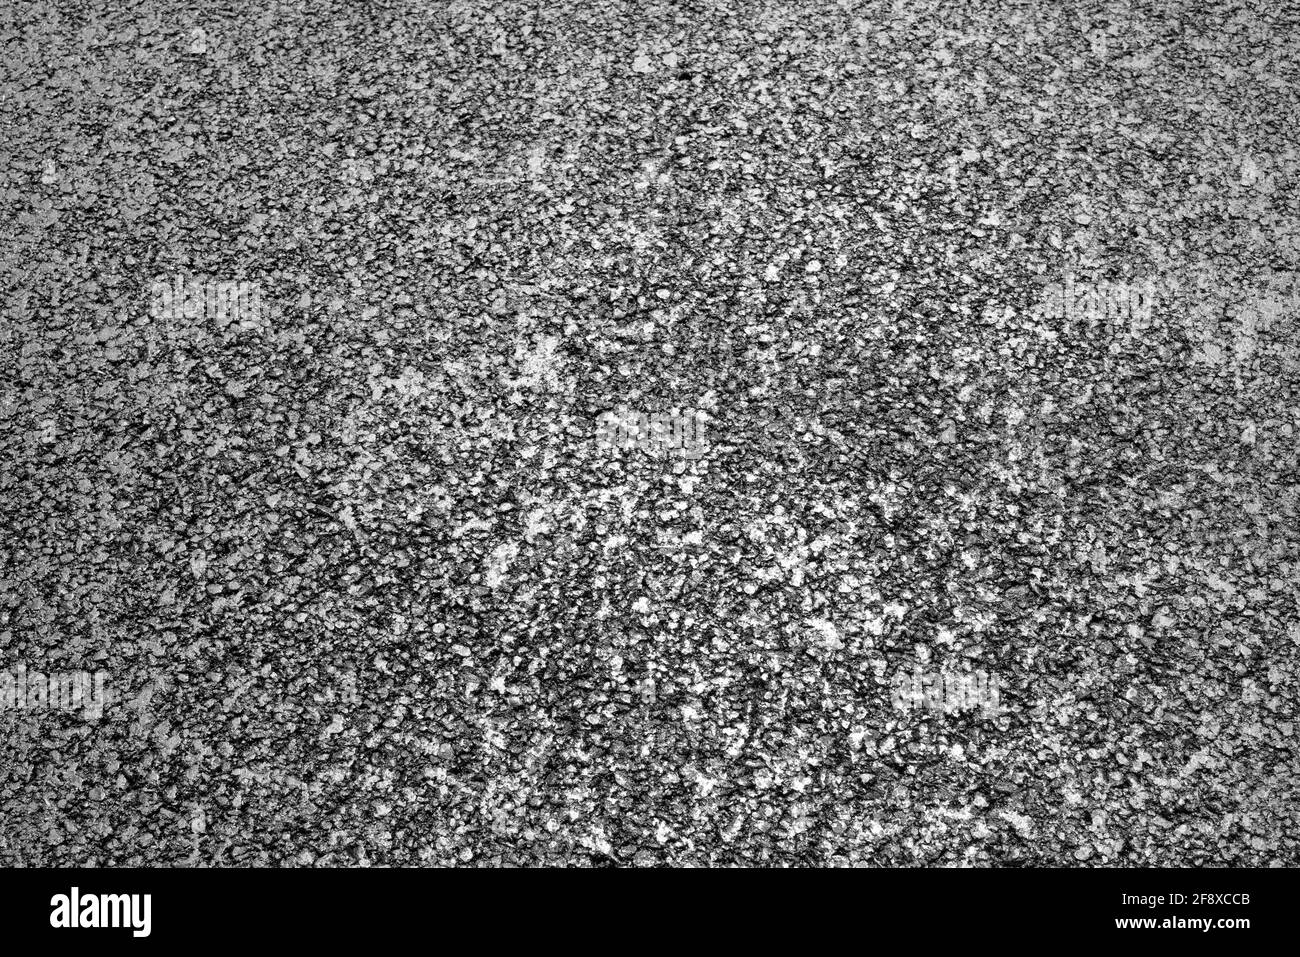 Glänzender stein Schwarzweiß-Stockfotos und -bilder - Seite 3 - Alamy